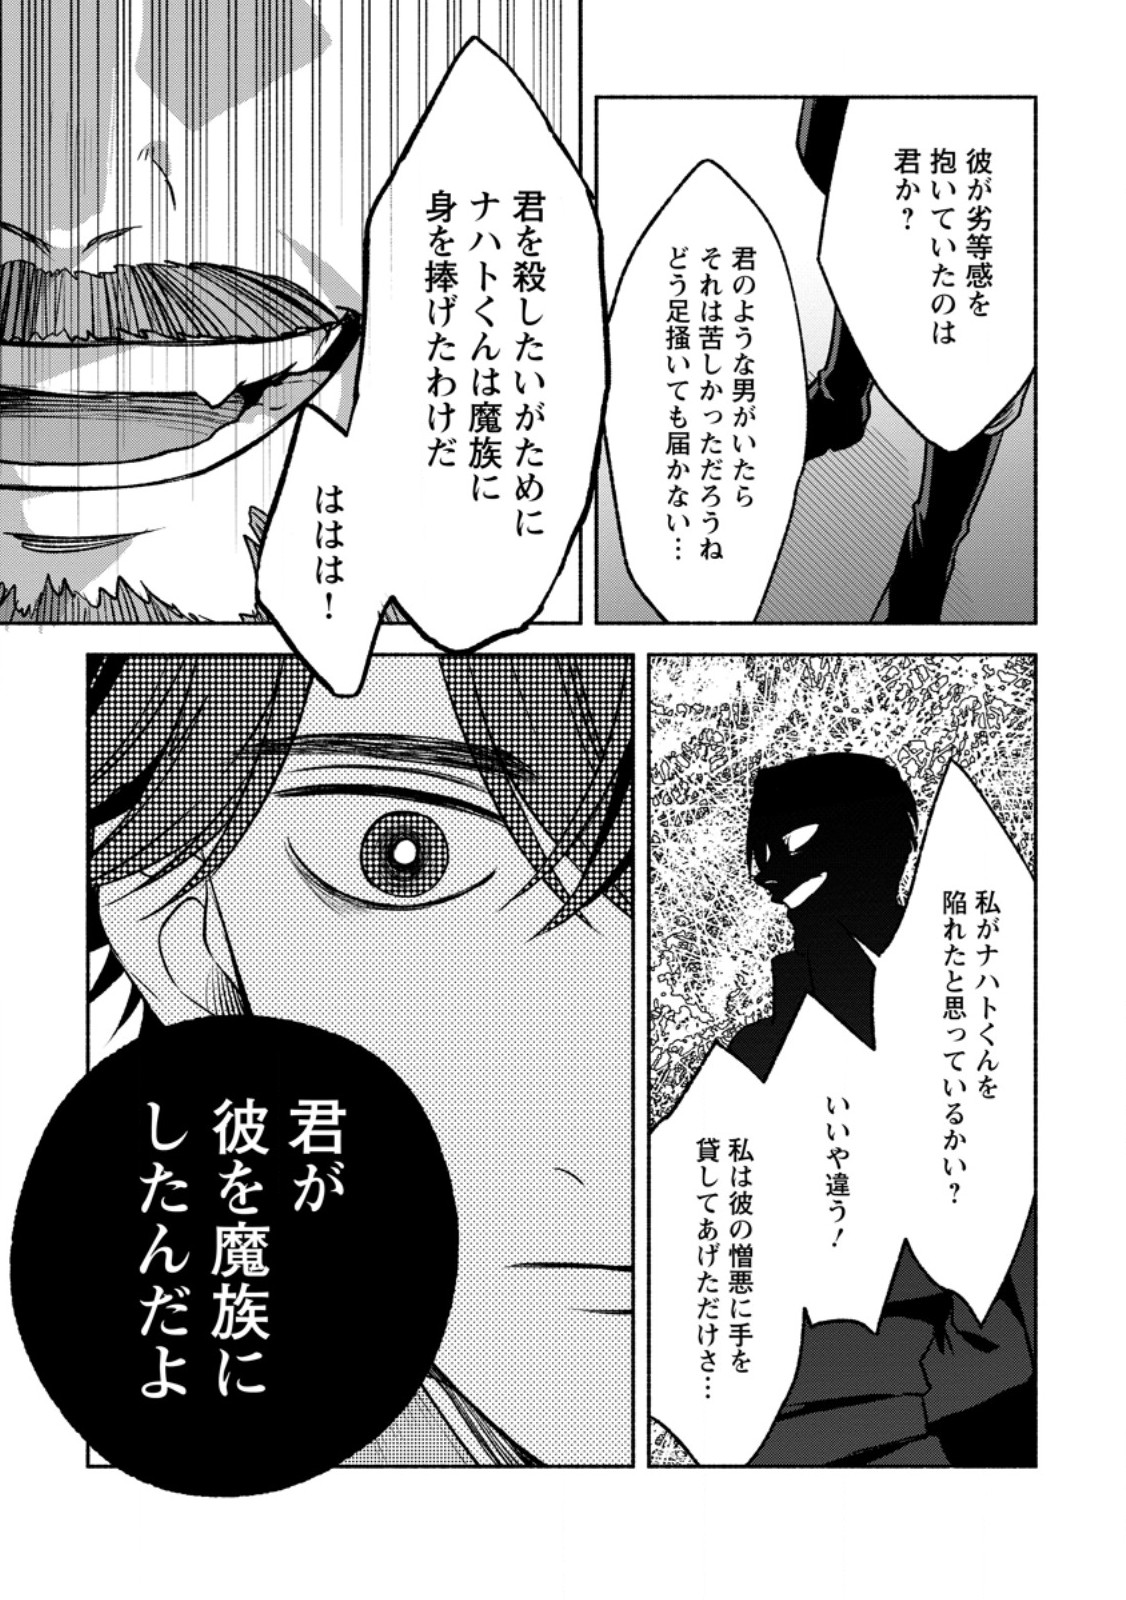 Sono Monban, Saikyou Nitsuki: Tsuihou Sareta Bougyo Ryoku 9999 no Senshi, Outo no Monban Toshite Musou Suru - Chapter 29.2 - Page 8